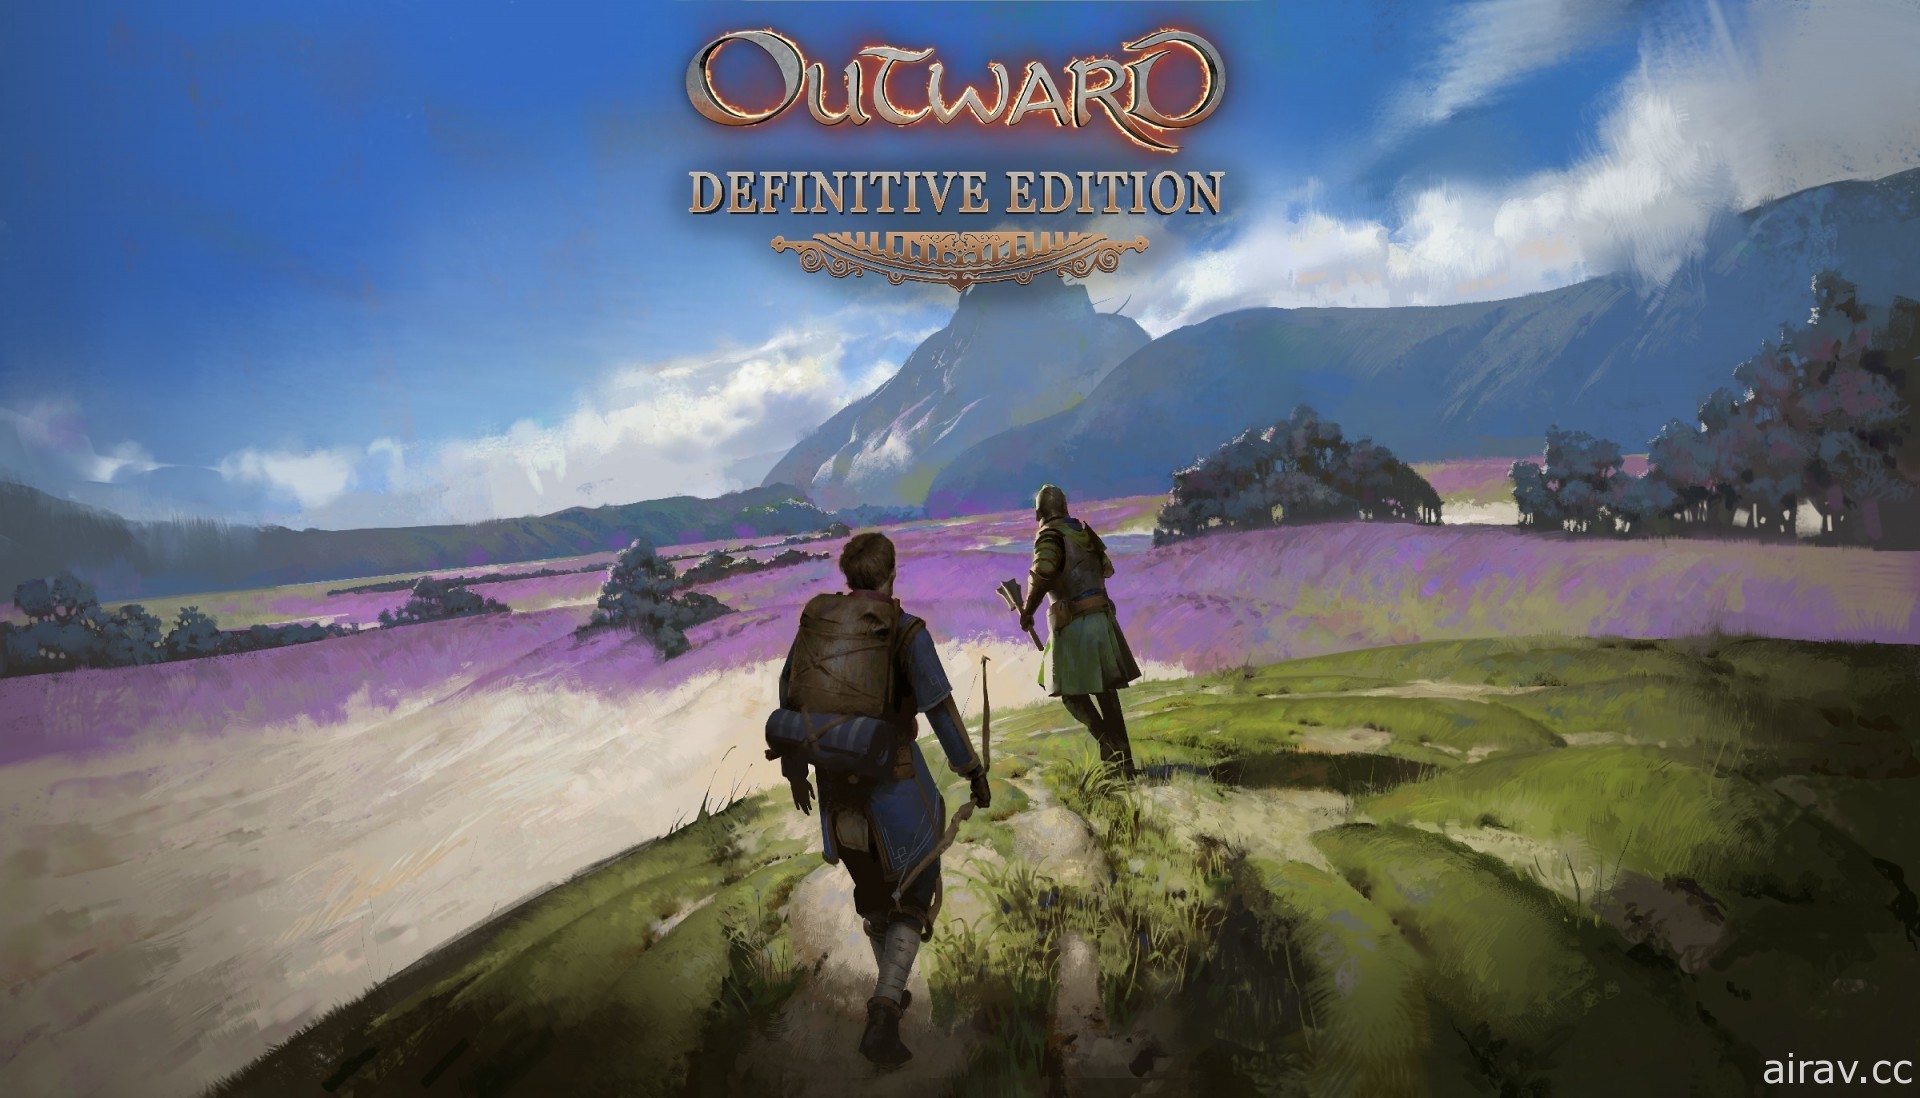 《物質世界 Outward》決定版 5 月 17 日發售 收錄本篇及擴充內容